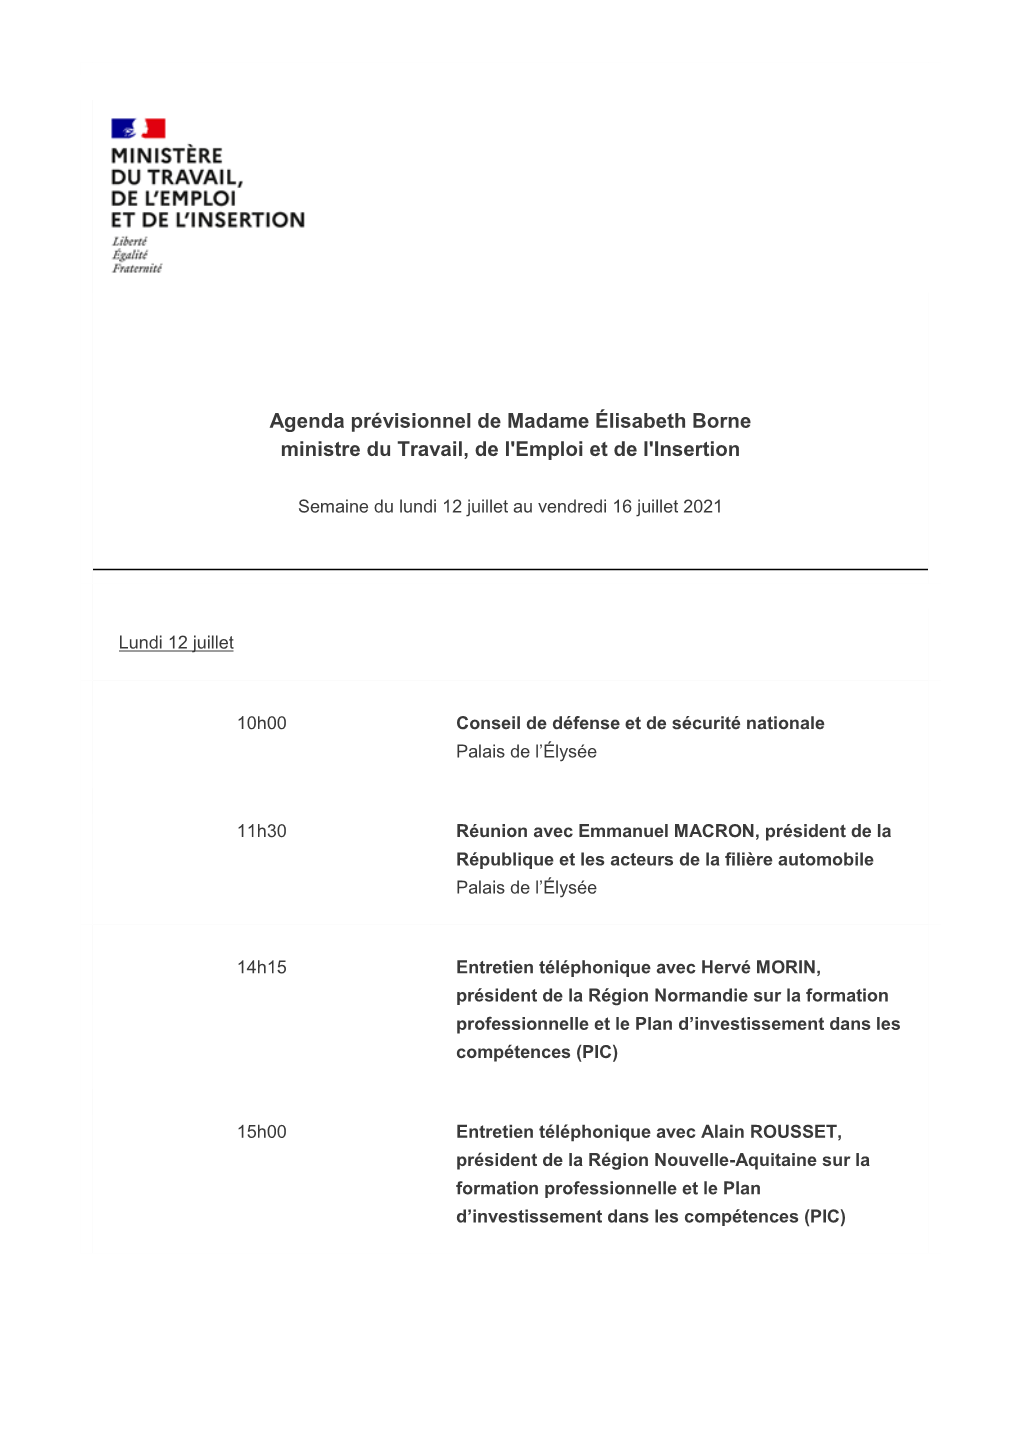 Agenda Prévisionnel De Madame Élisabeth Borne Ministre Du Travail, De L'emploi Et De L'insertion